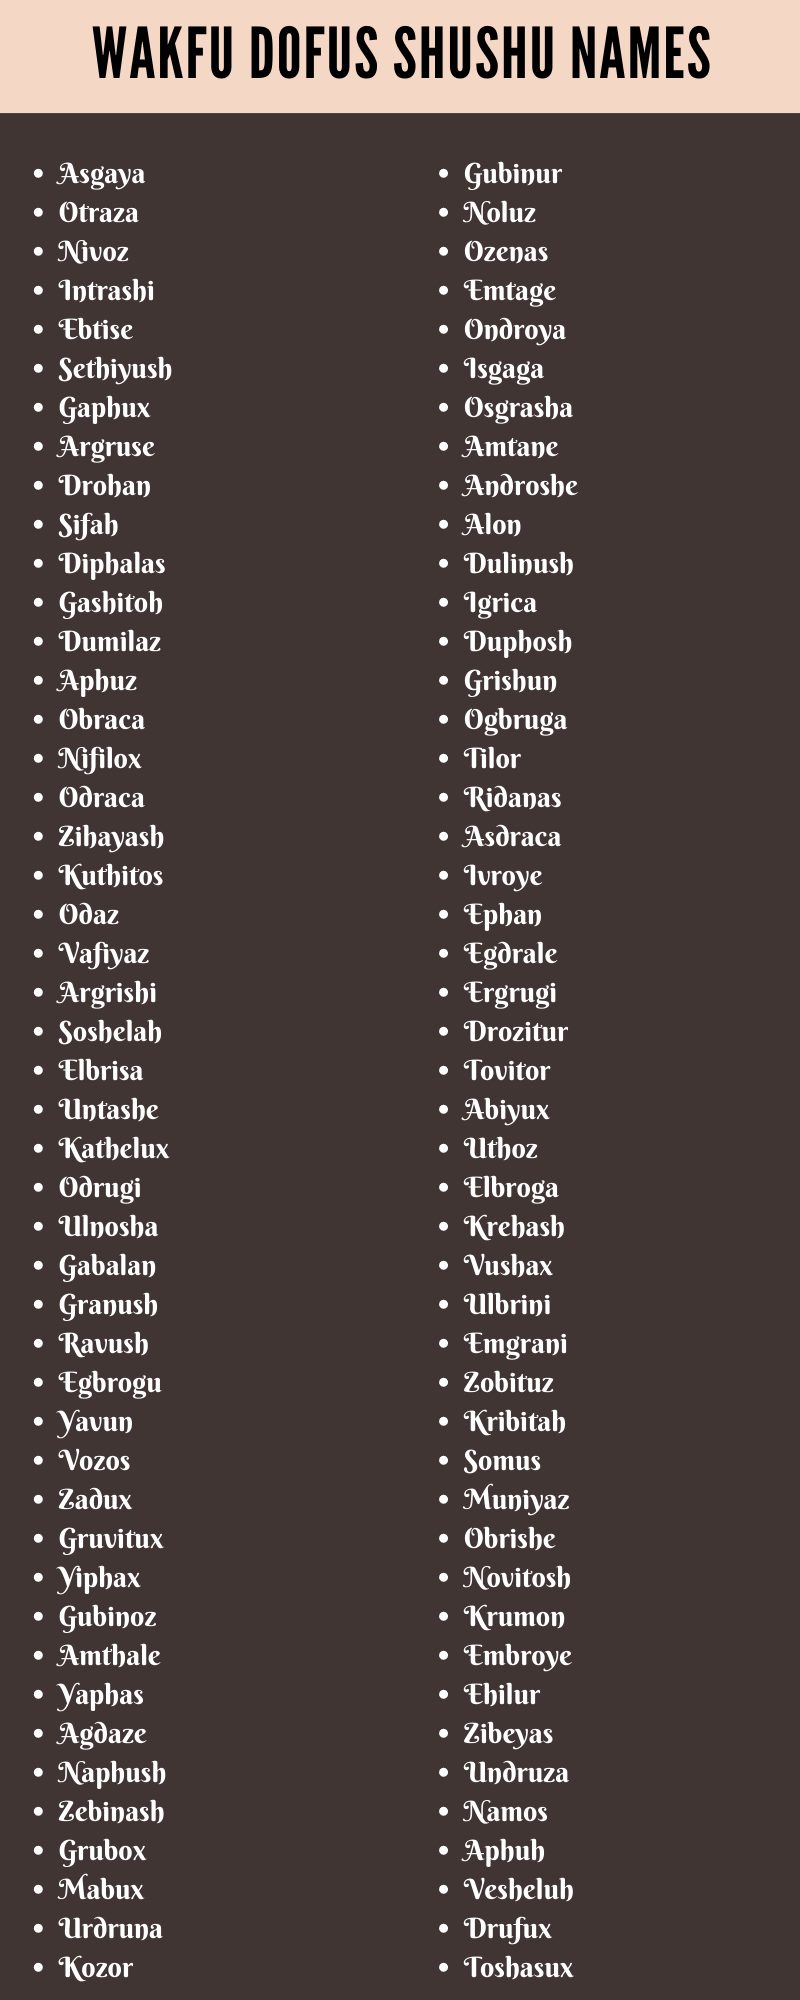 Wakfu Dofus Shushu Names